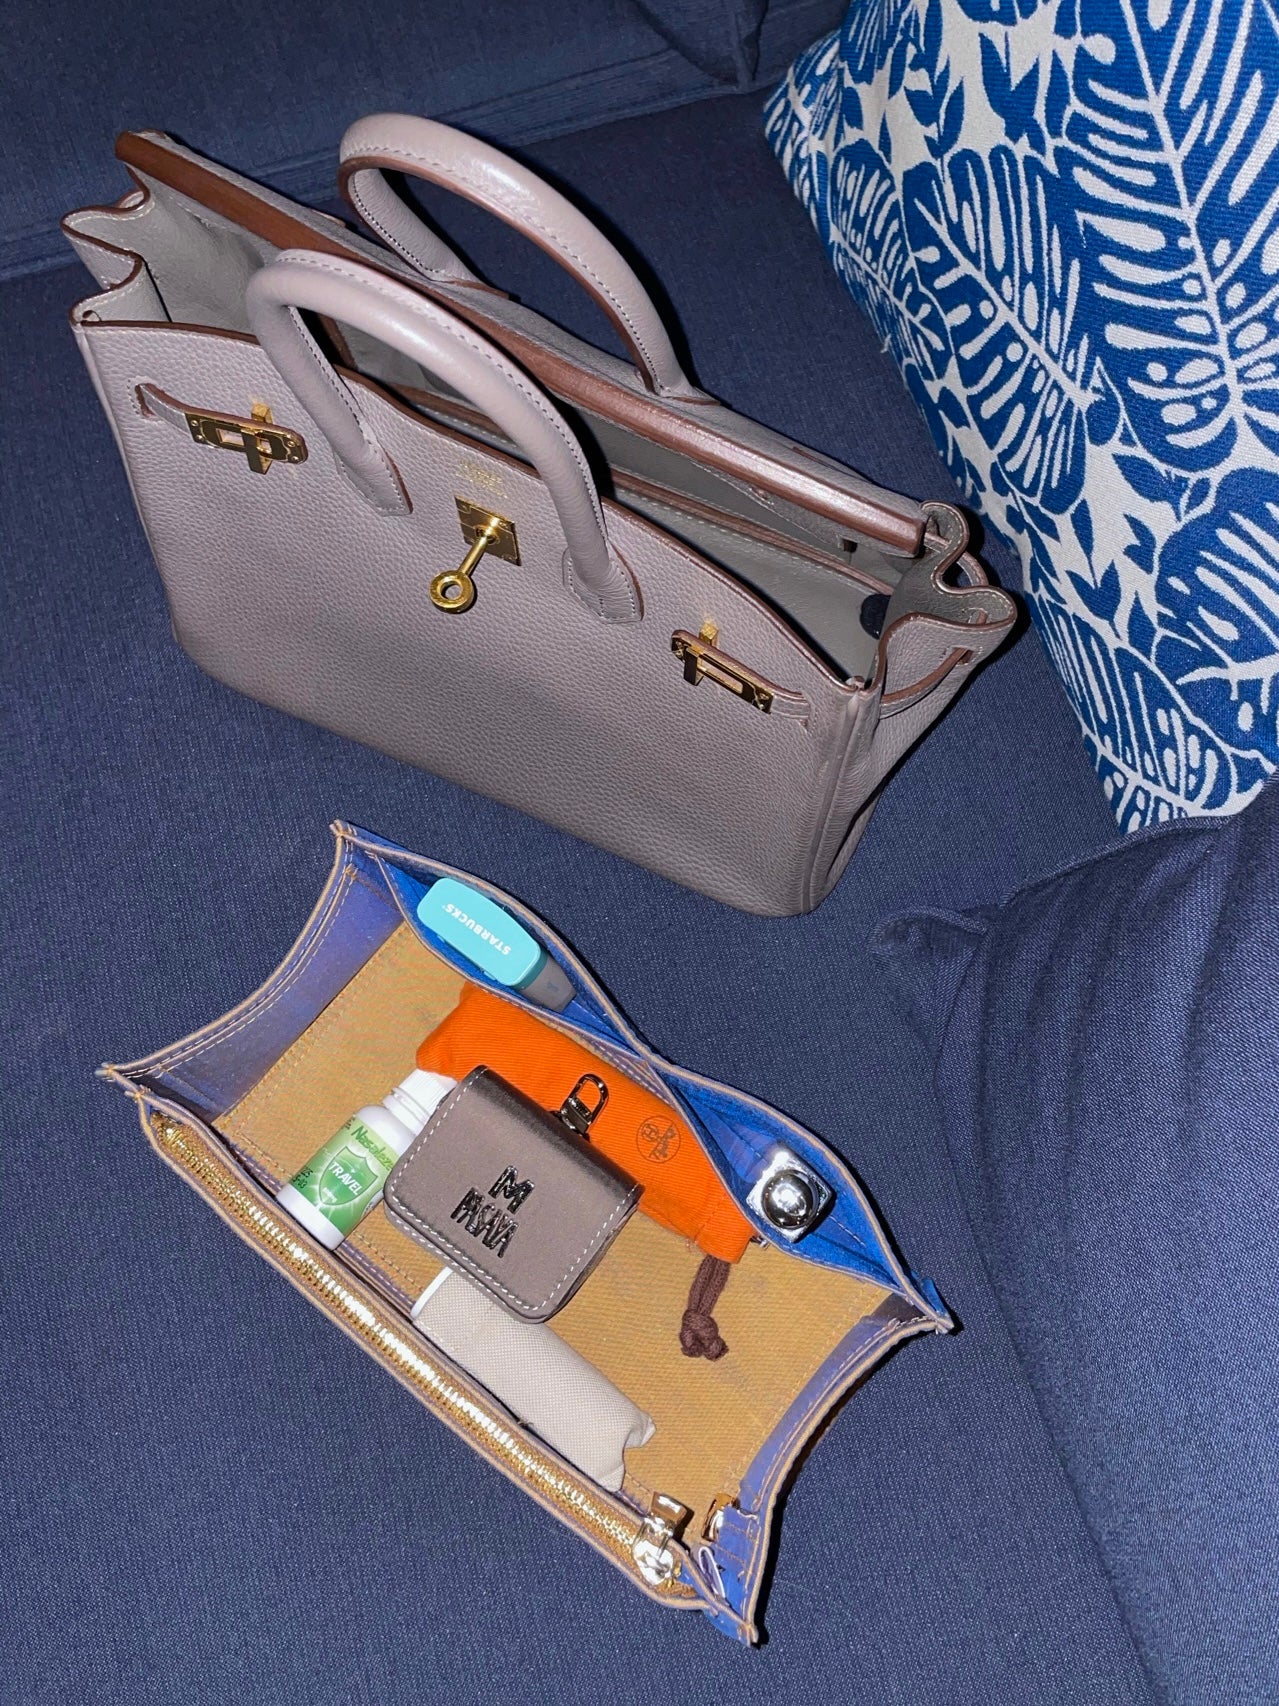 Merandi MerandiWorld Hermes Premium Bag Organizer Bag in Bag Bag Inserts In the Loop 18 In the Loop 26 samorga 7rp 